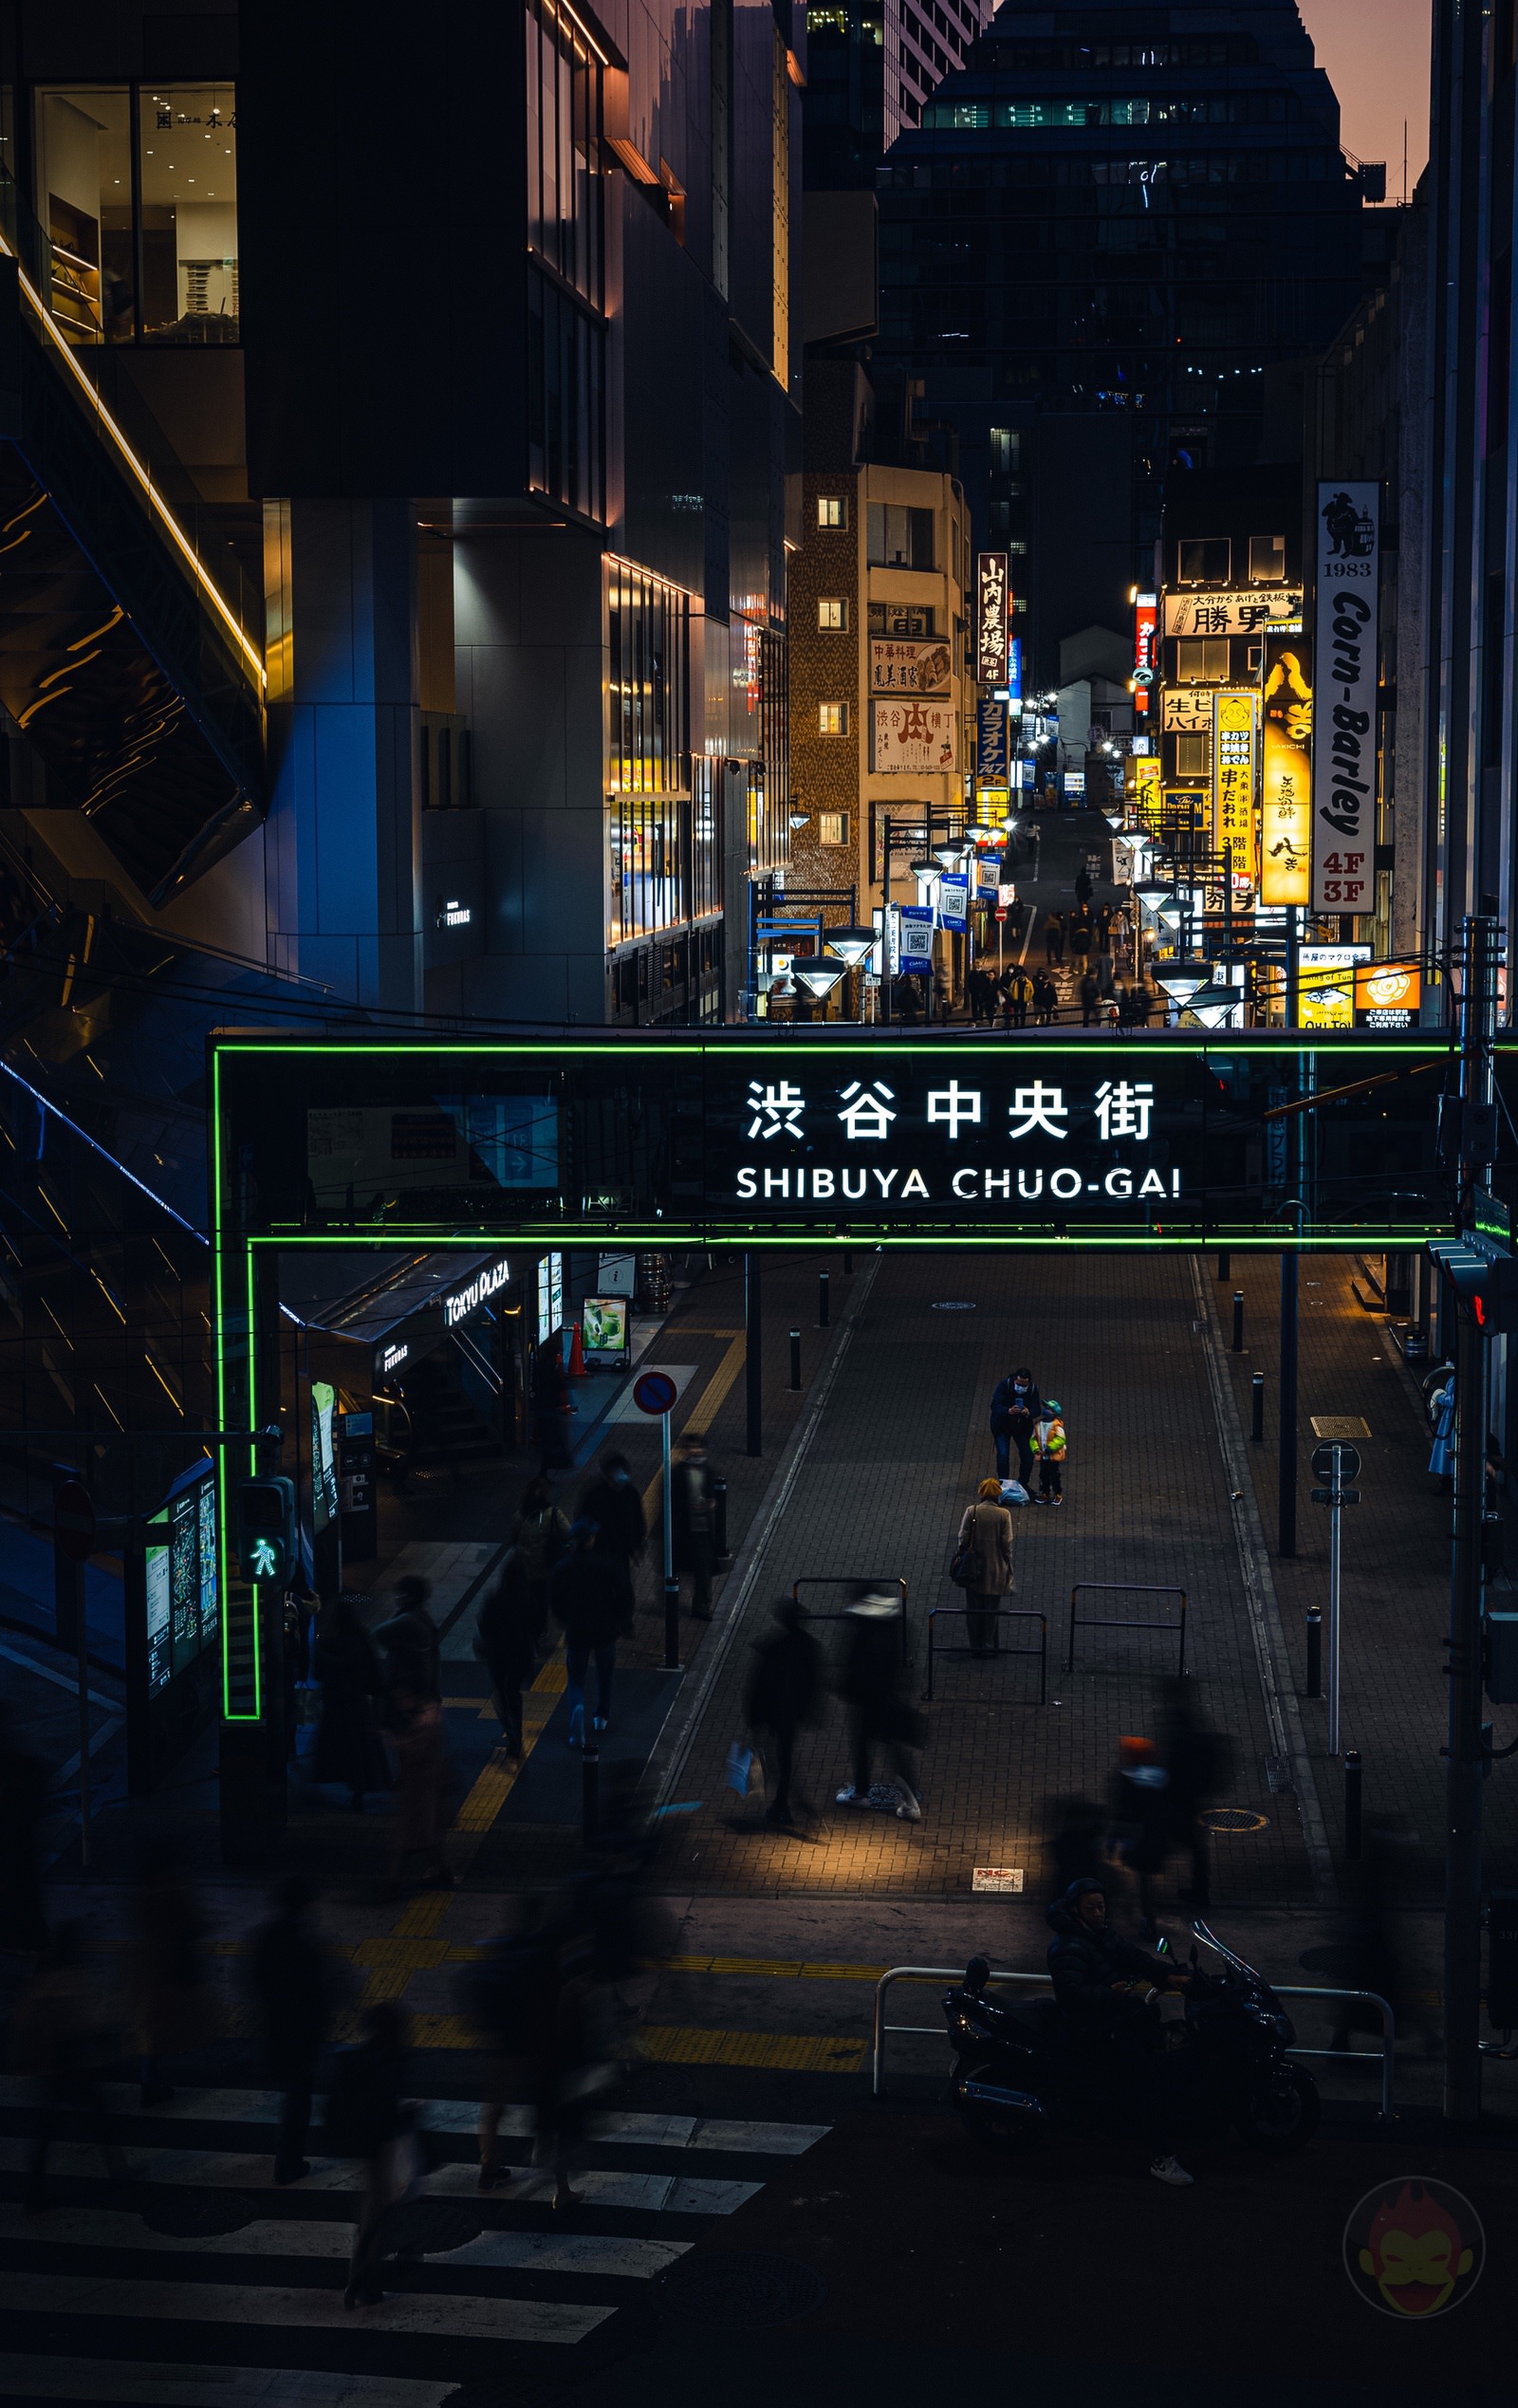 Shibuya Dusk and Night Street Photography with canonr6markII 22